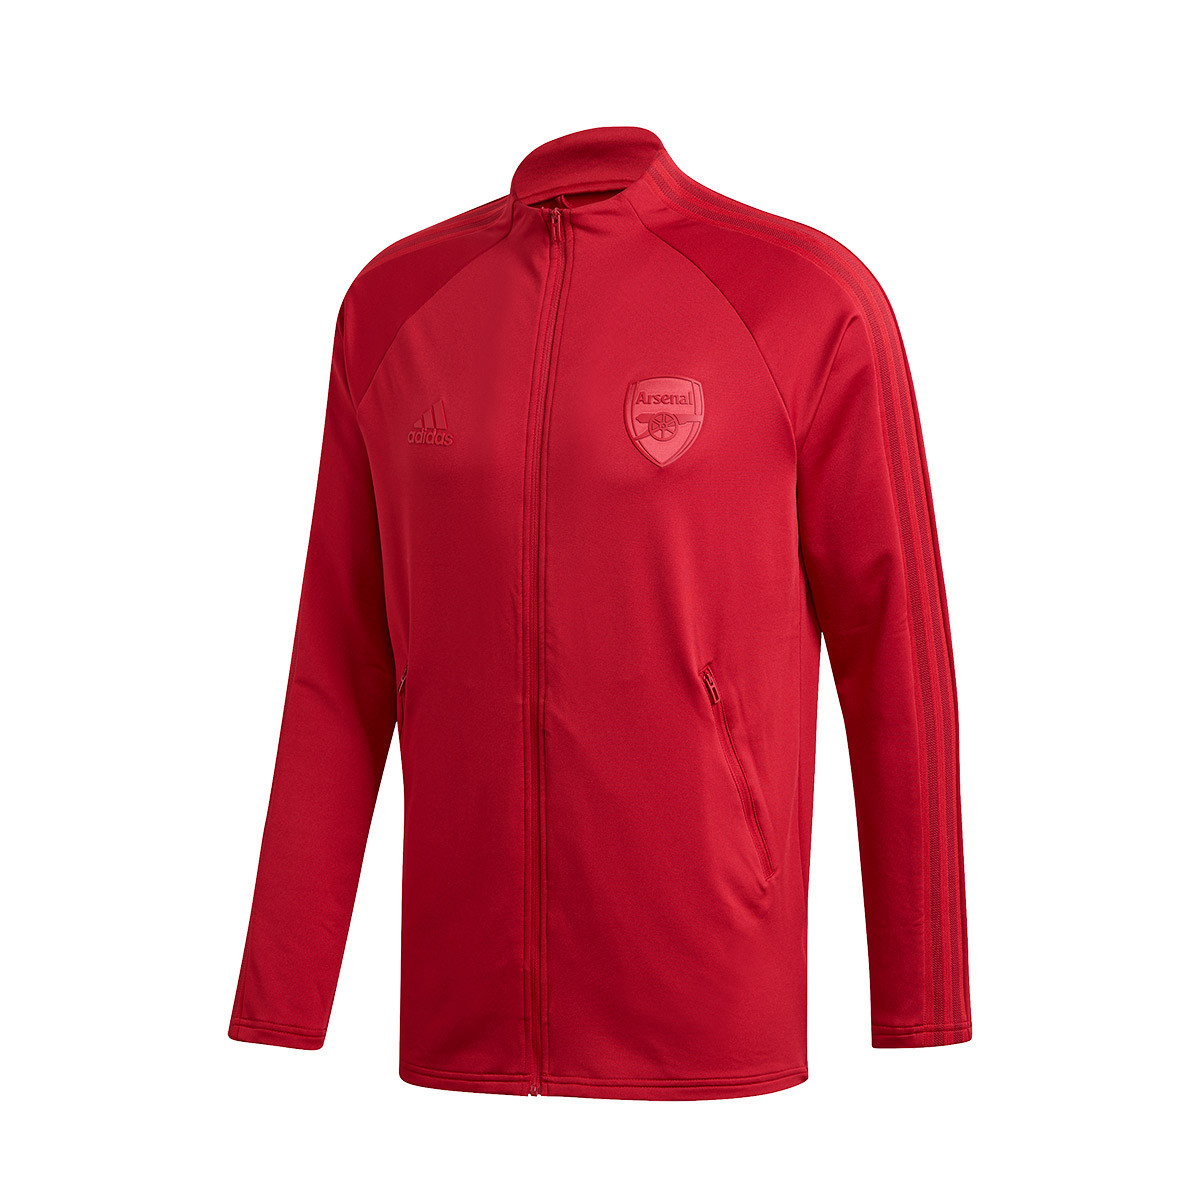 Adidas Arsenal mikina / bunda červená pánska